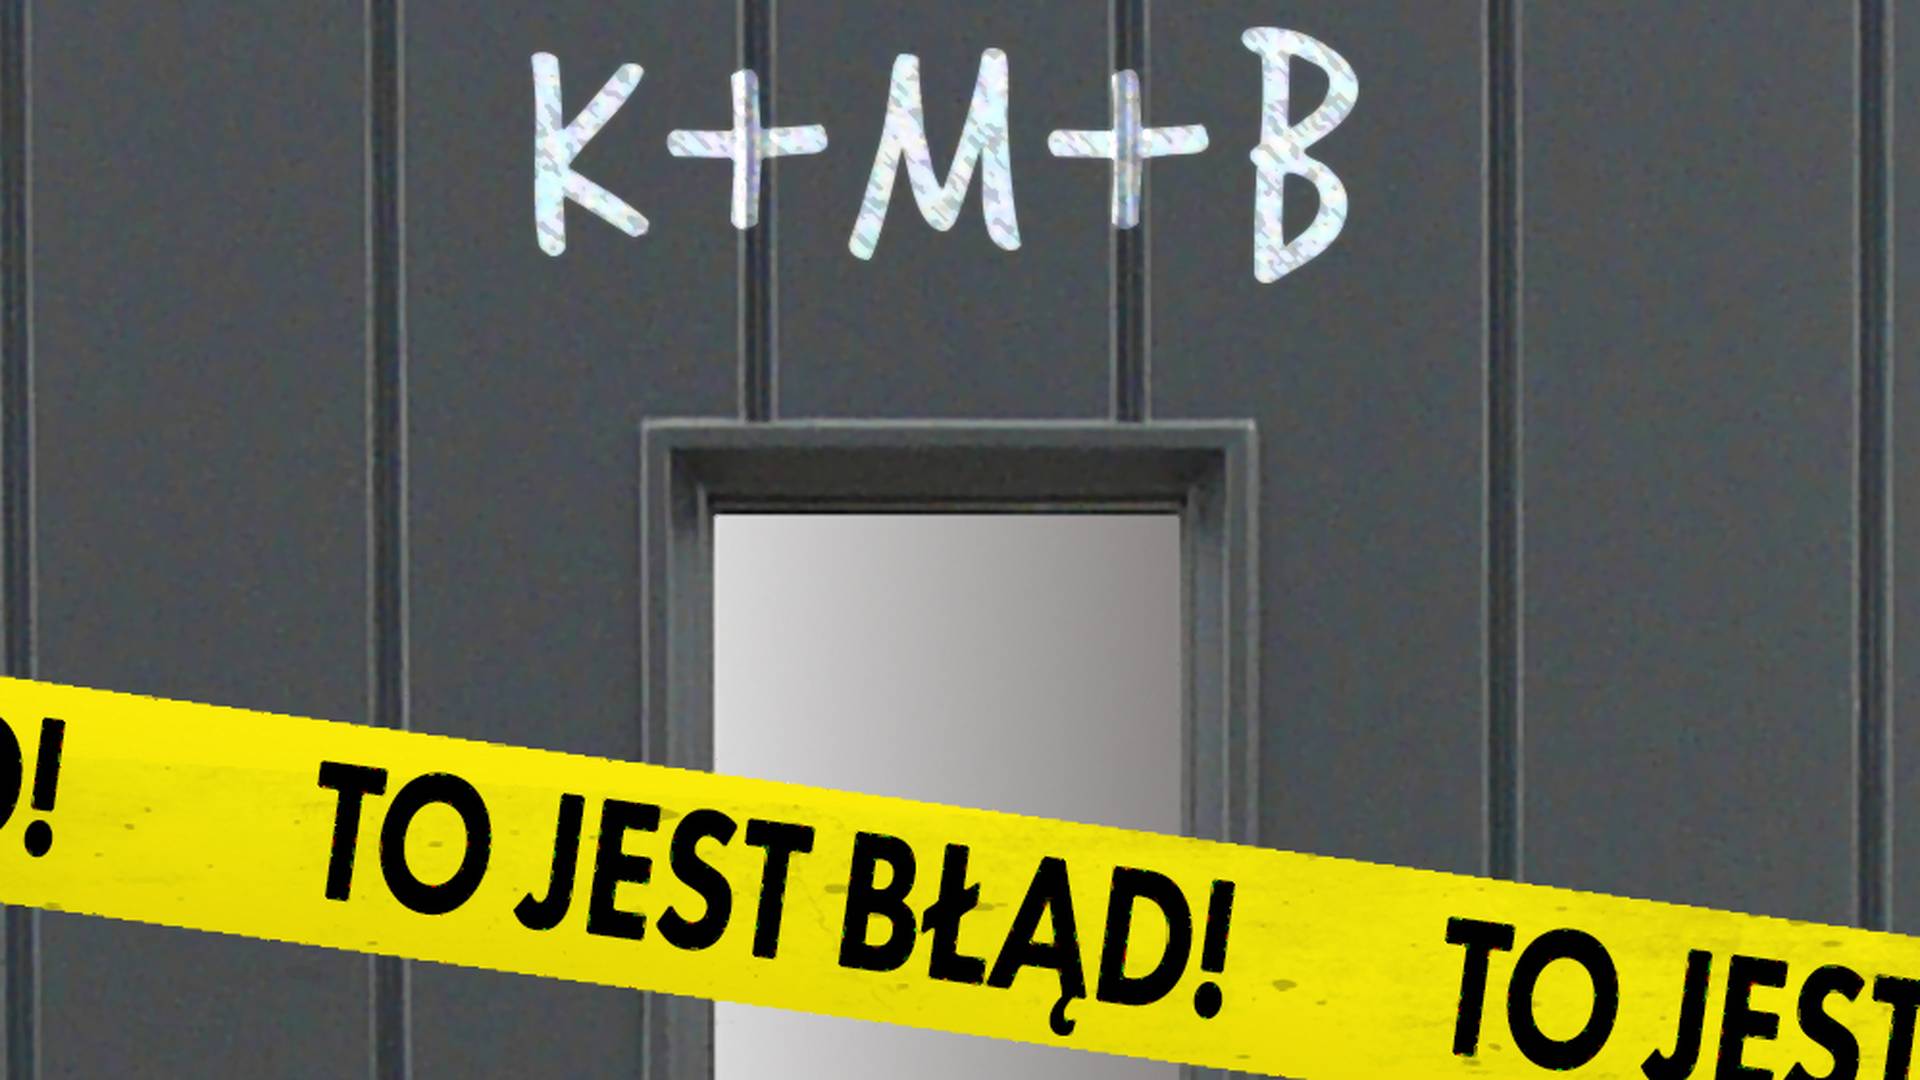 Piszesz K+M+B na drzwiach? Błąd, to wcale nie są imiona Trzech Króli